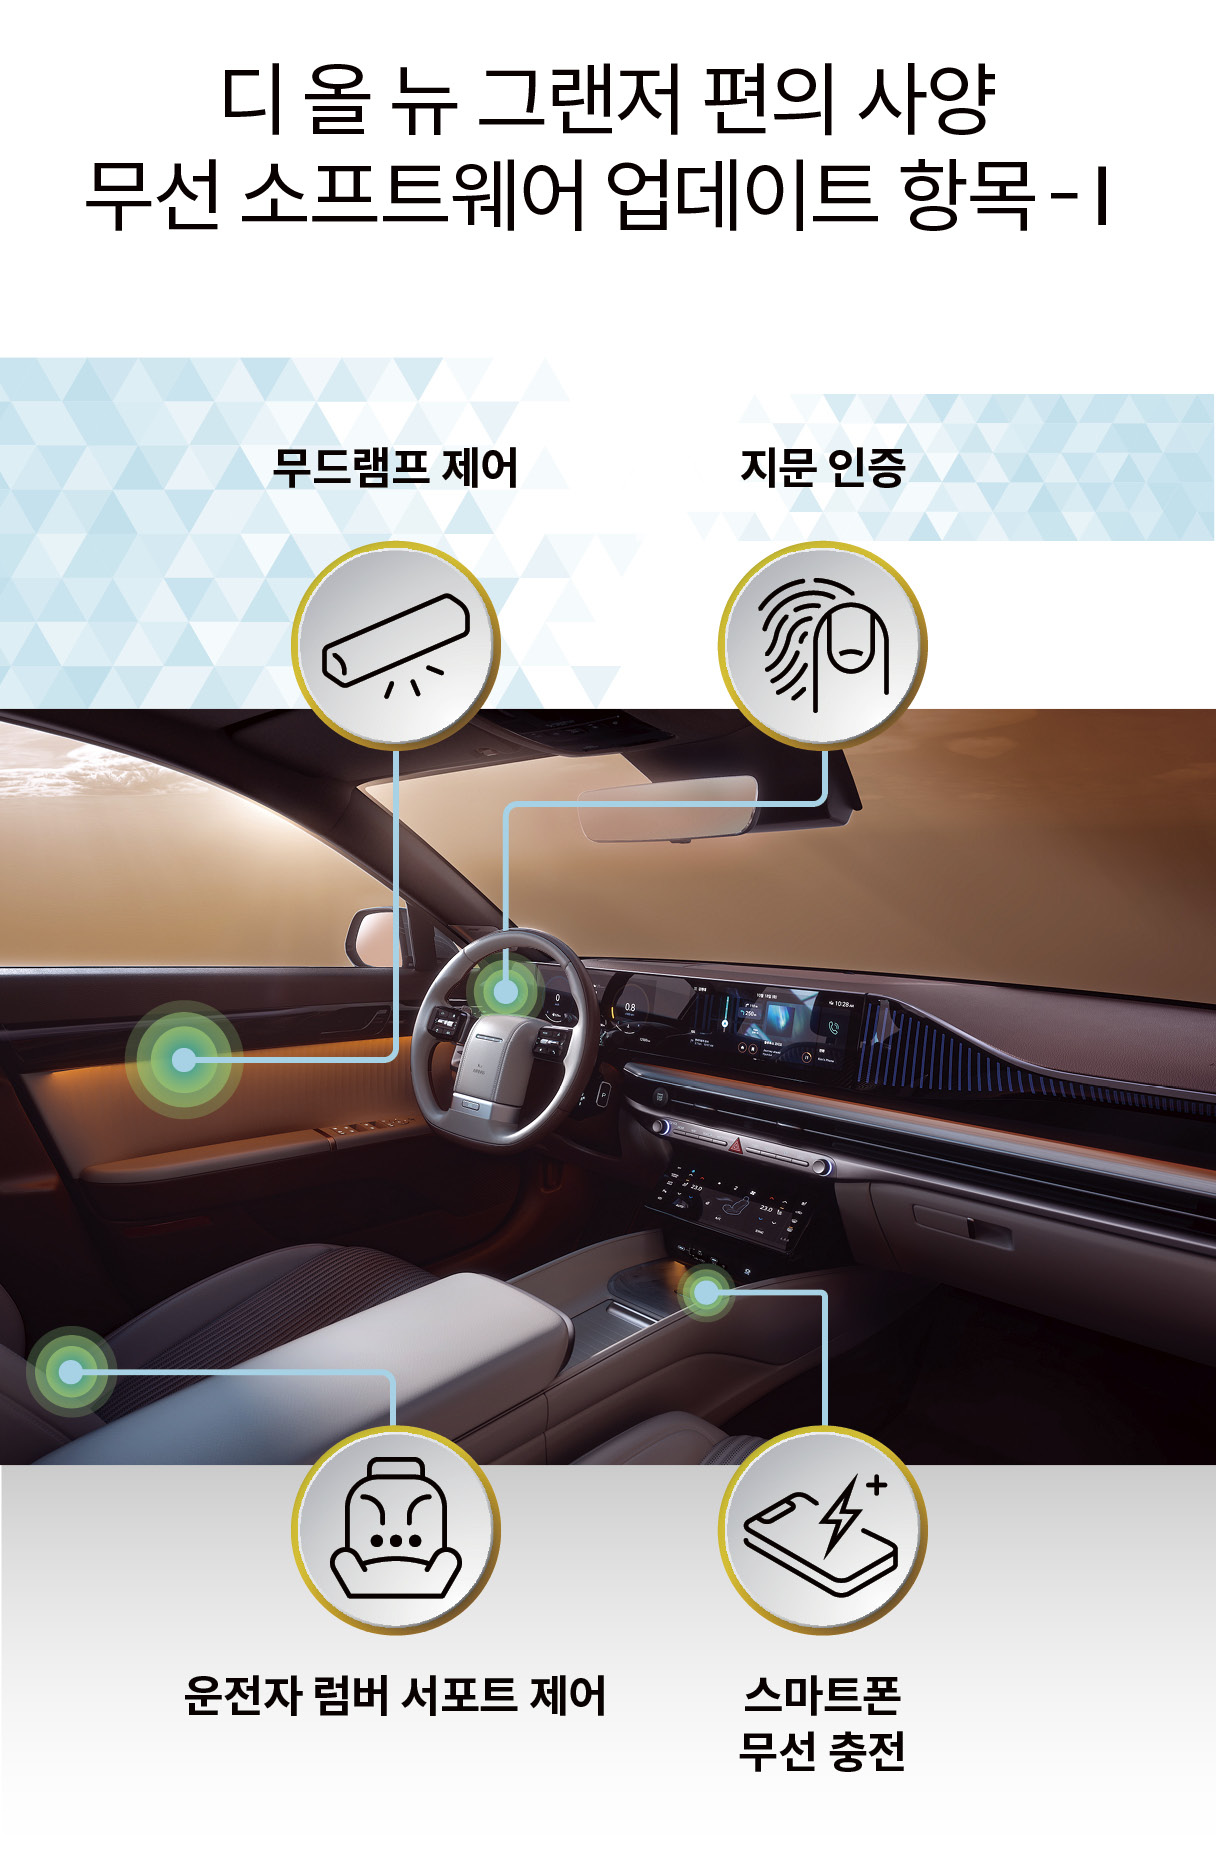 현대자동차 디 올 뉴 그랜저의 편의 사양 관련 무선 소프트웨어 업데이트를 표현한 그림